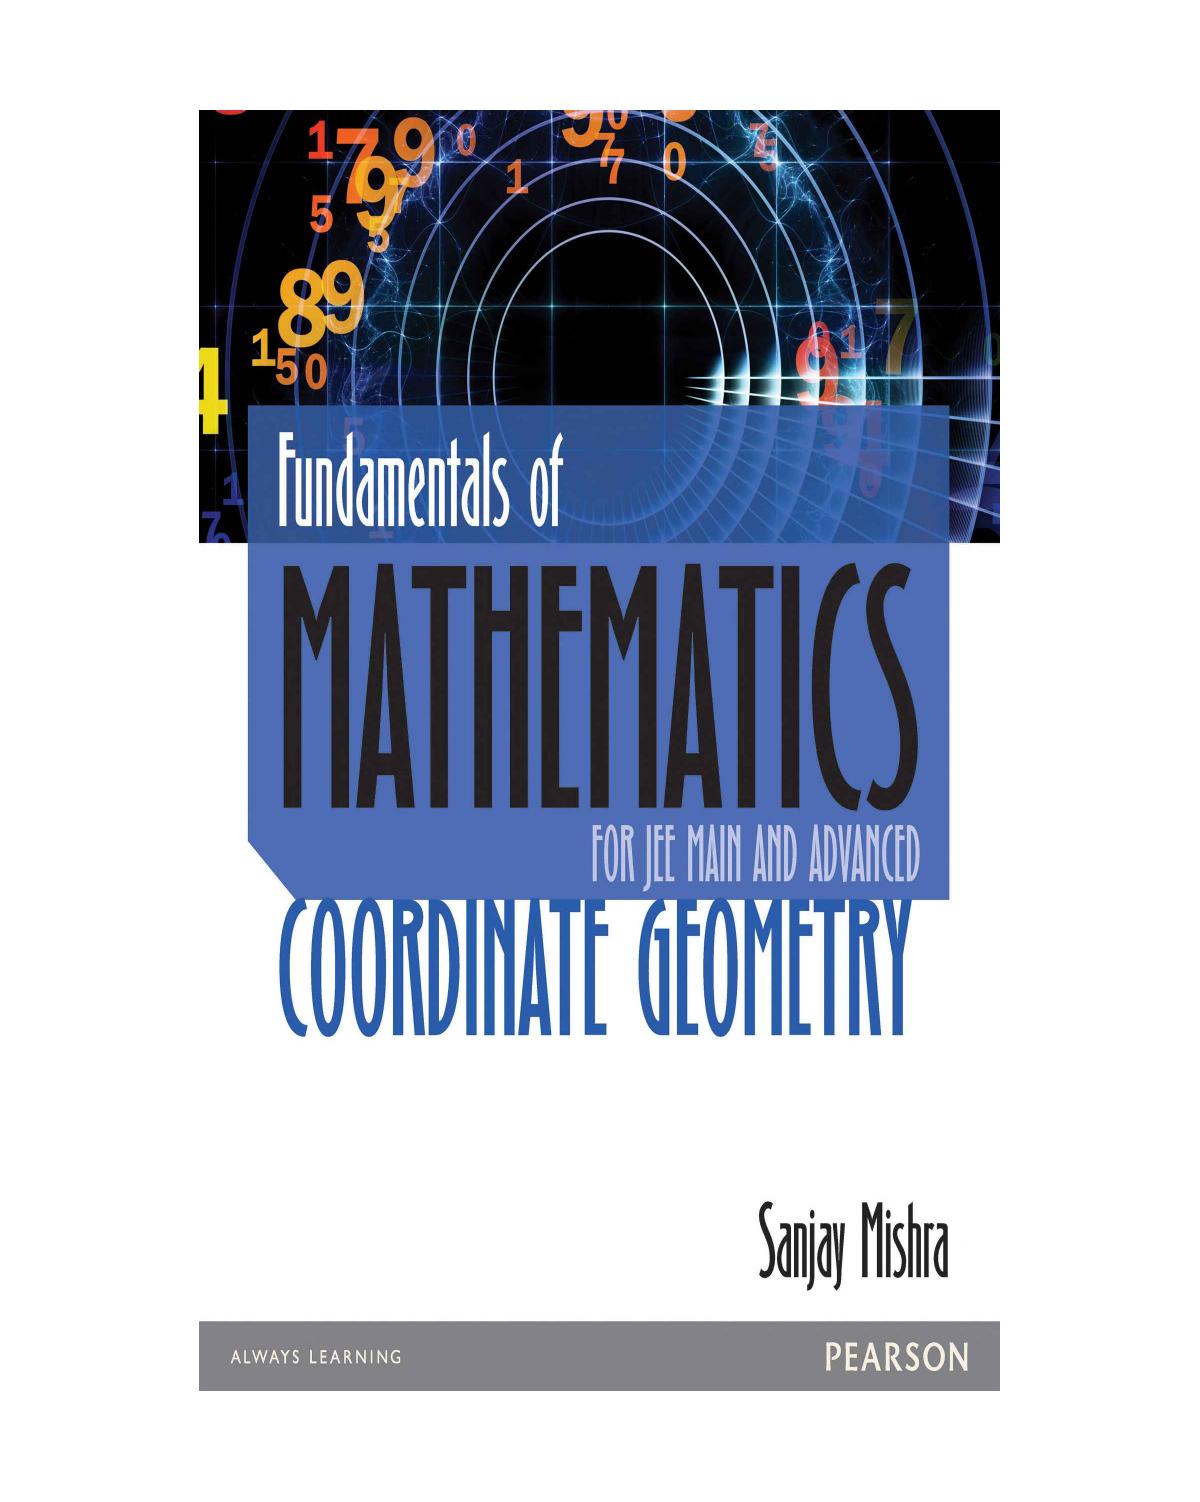 Fundamental of Mathematics - Cordinate Geometry